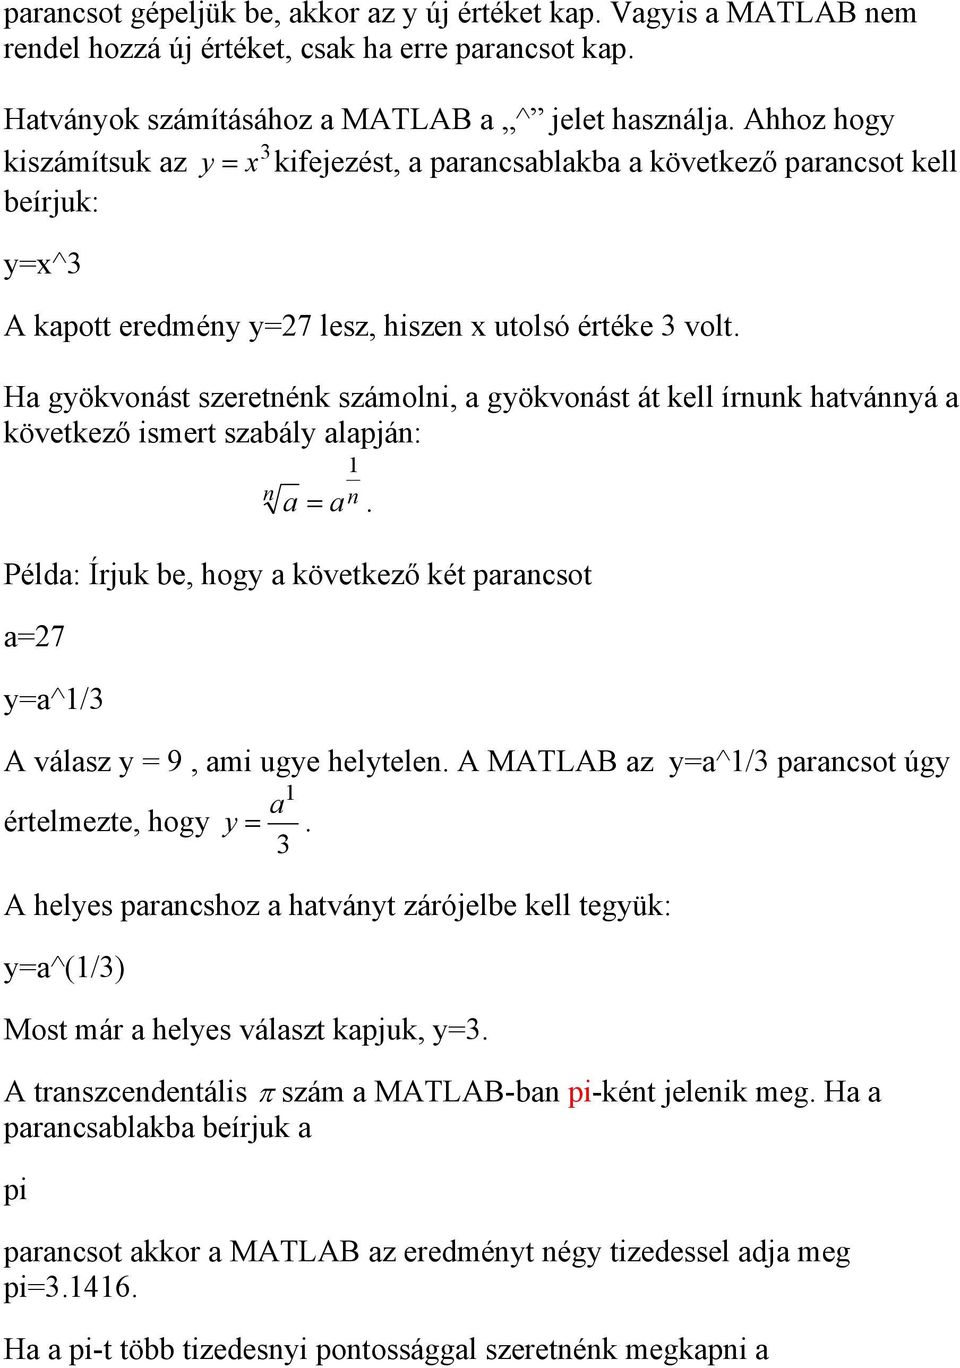 Bevezetés a MATLAB programba - PDF Ingyenes letöltés